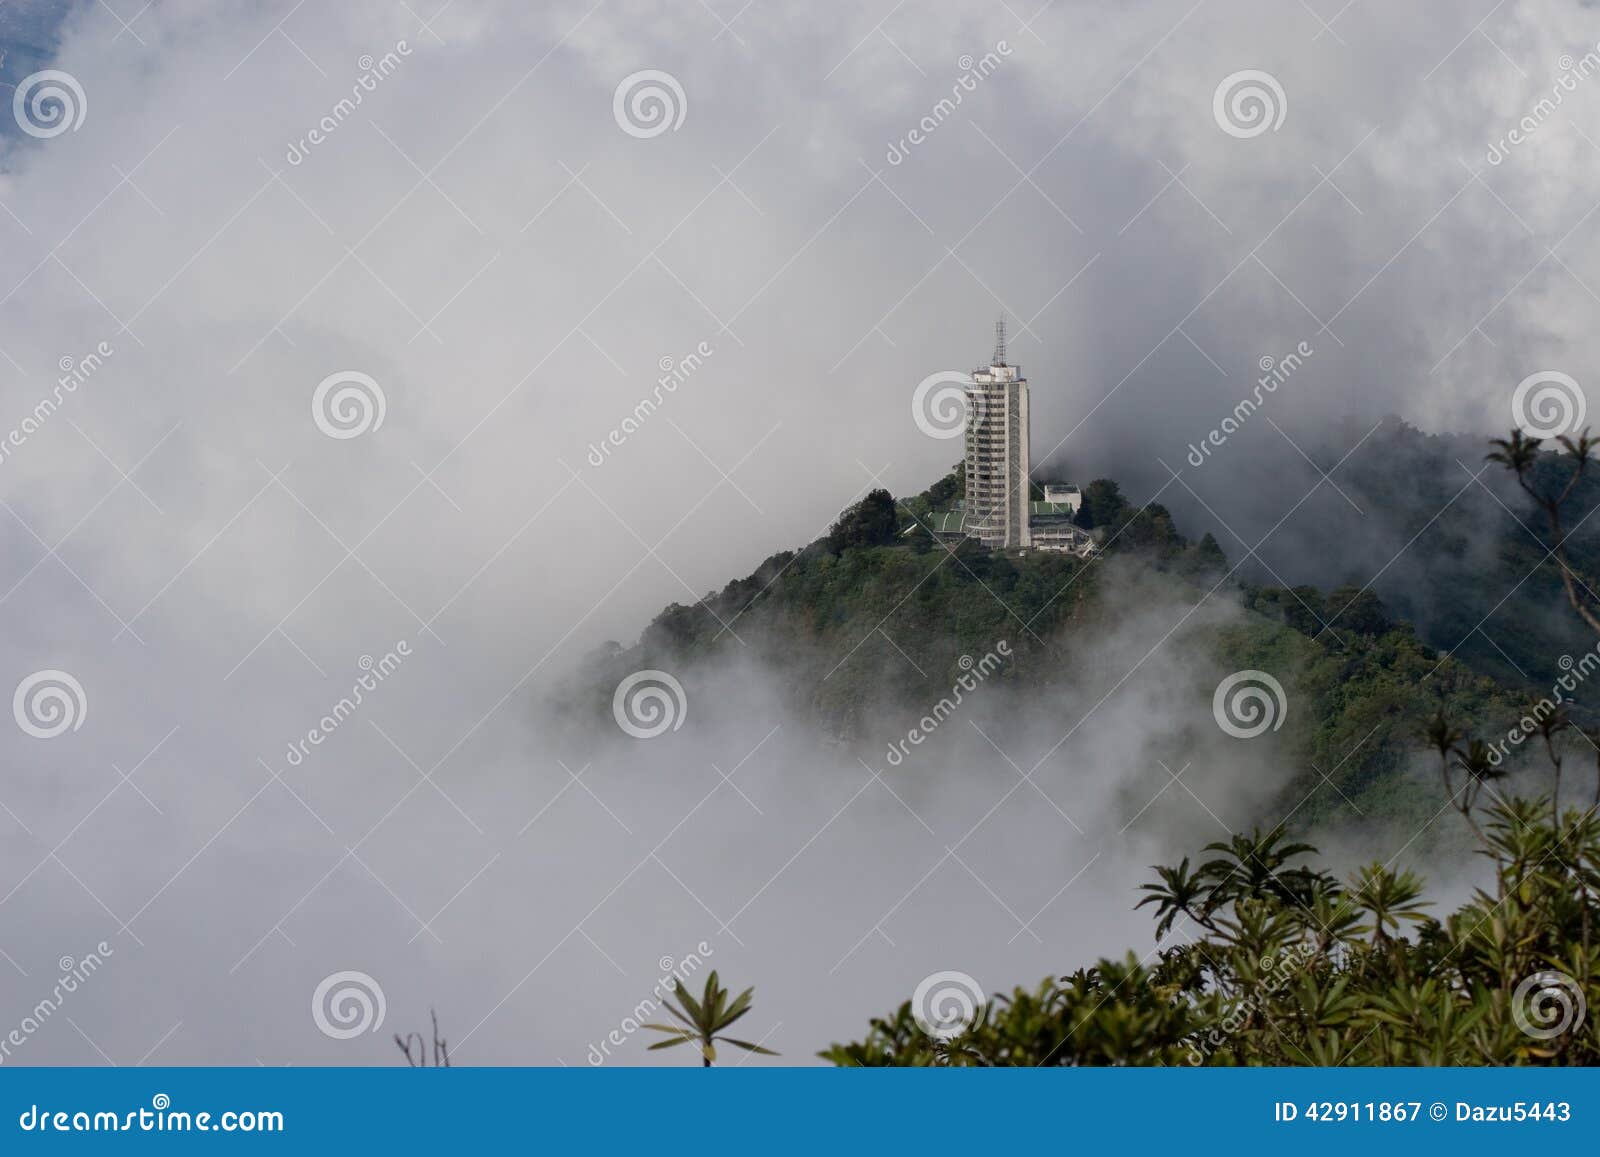 skyscraper rises above the fog